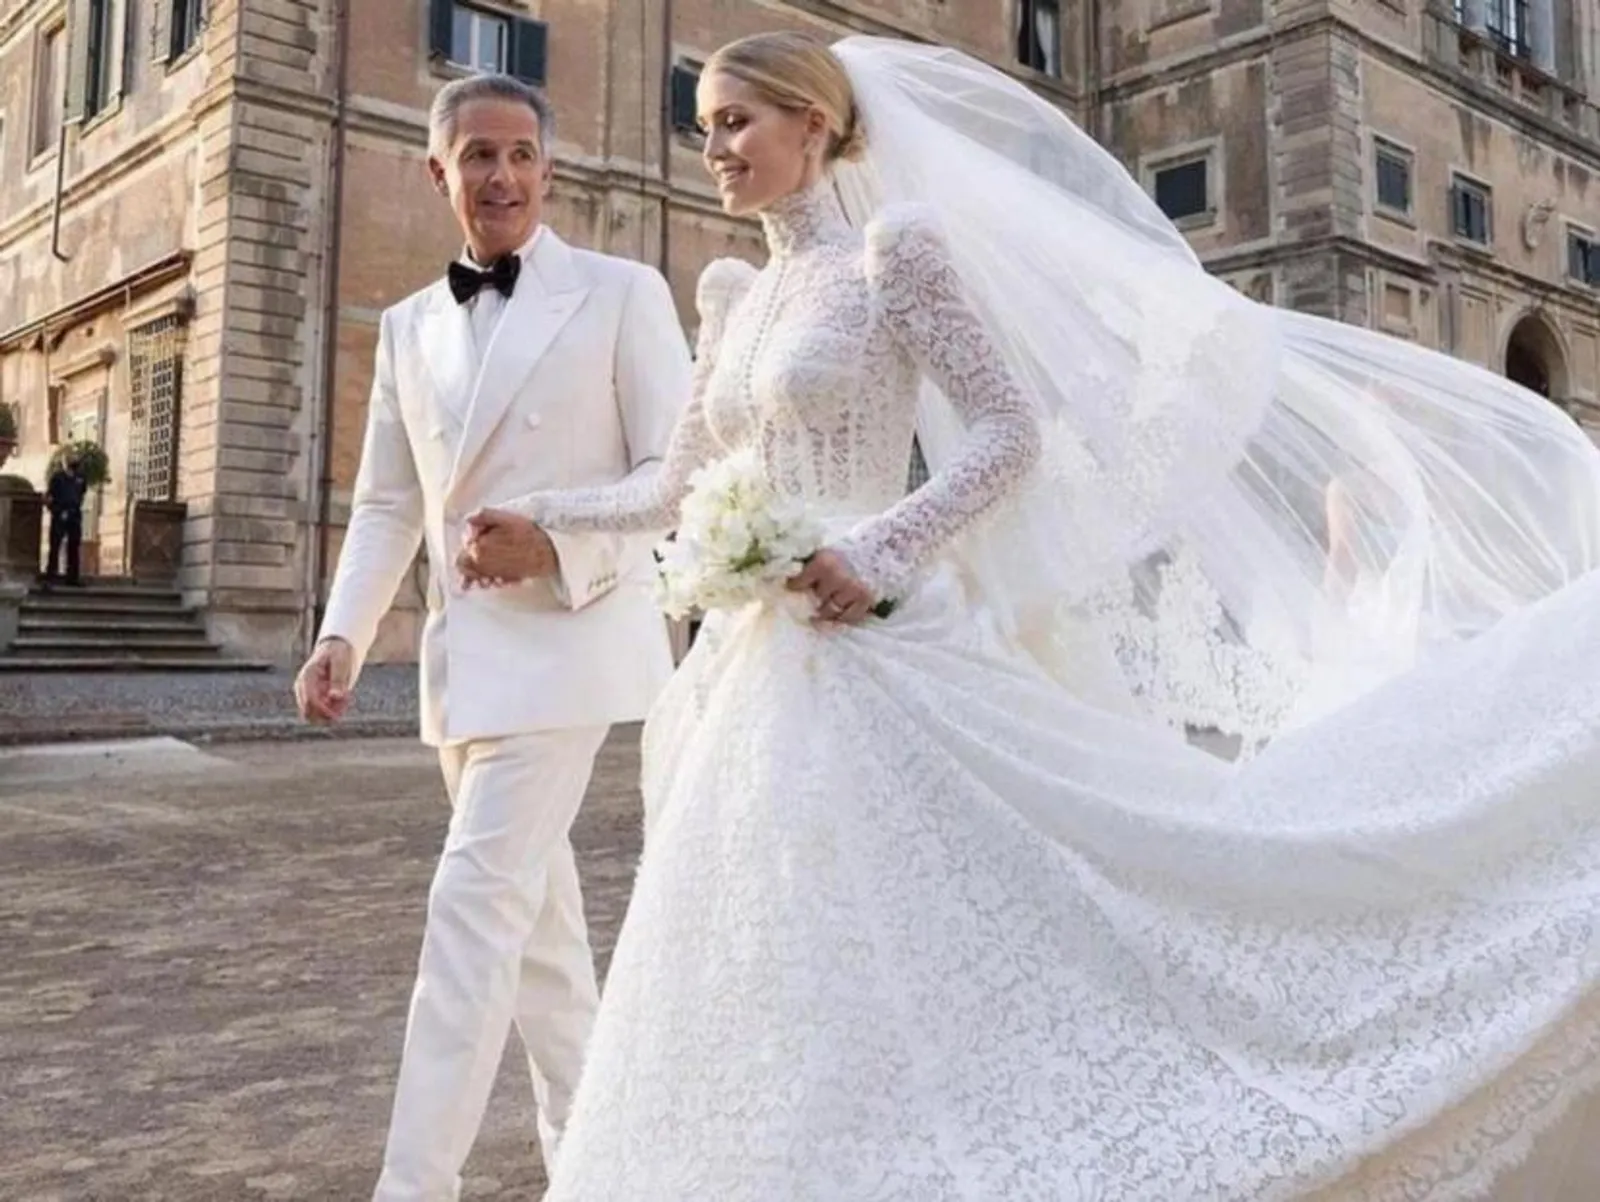 Intip Gaun Mewah Keponakan Putri Diana Diana yang Baru Menikah